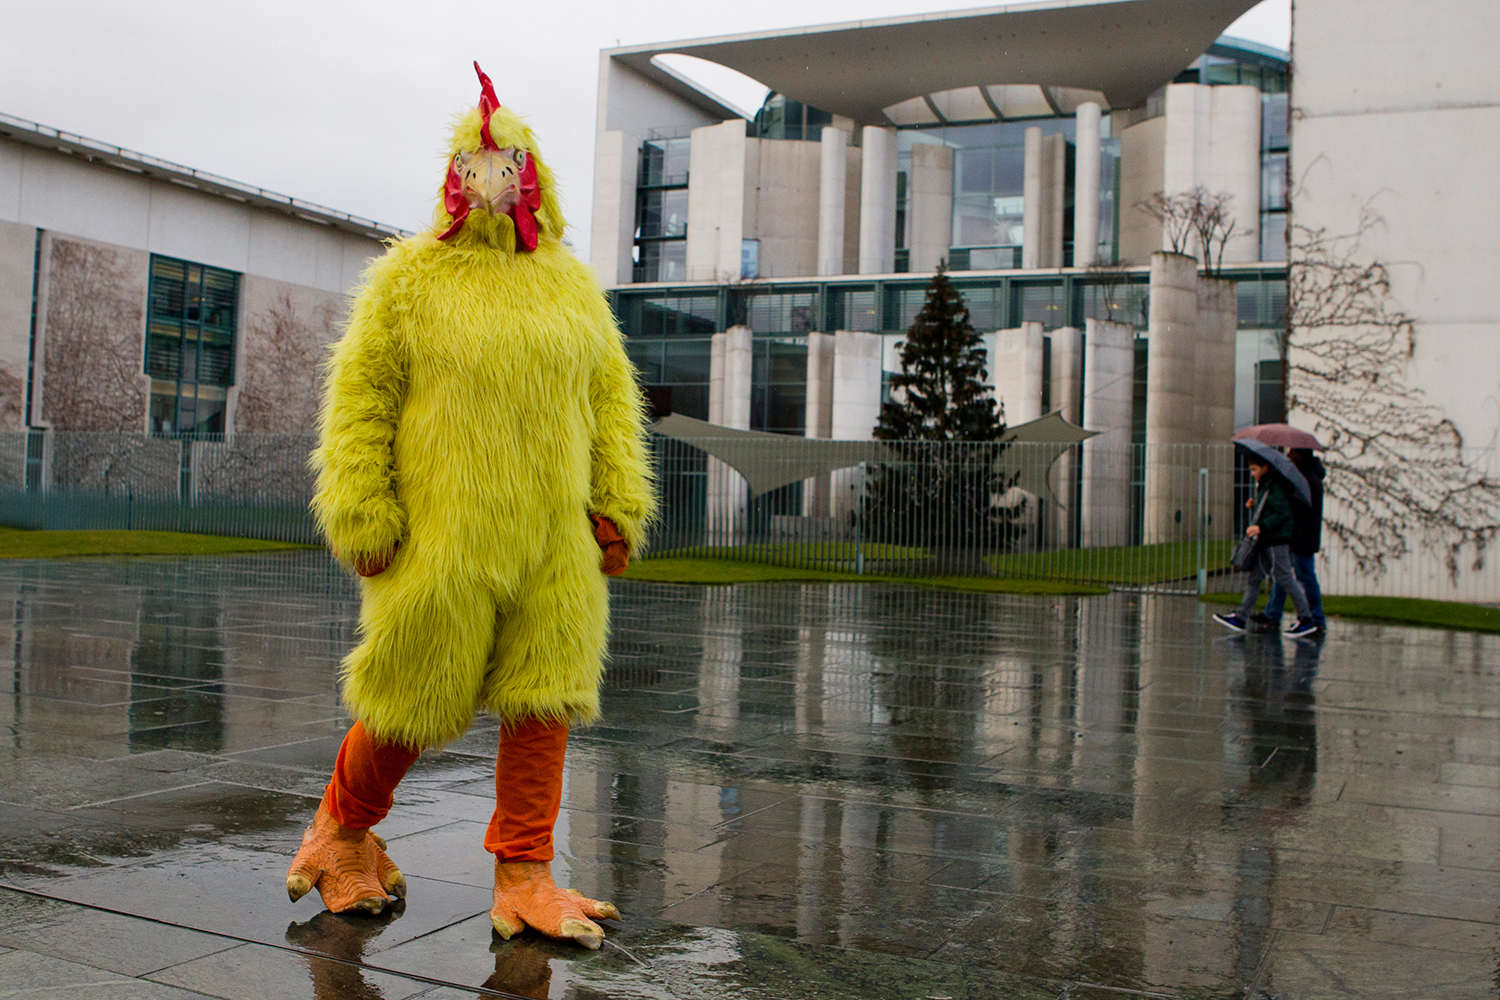 Disfrazarse de pollo o caminar 45 km, son los originales castigos creativos de un juez de EEUU